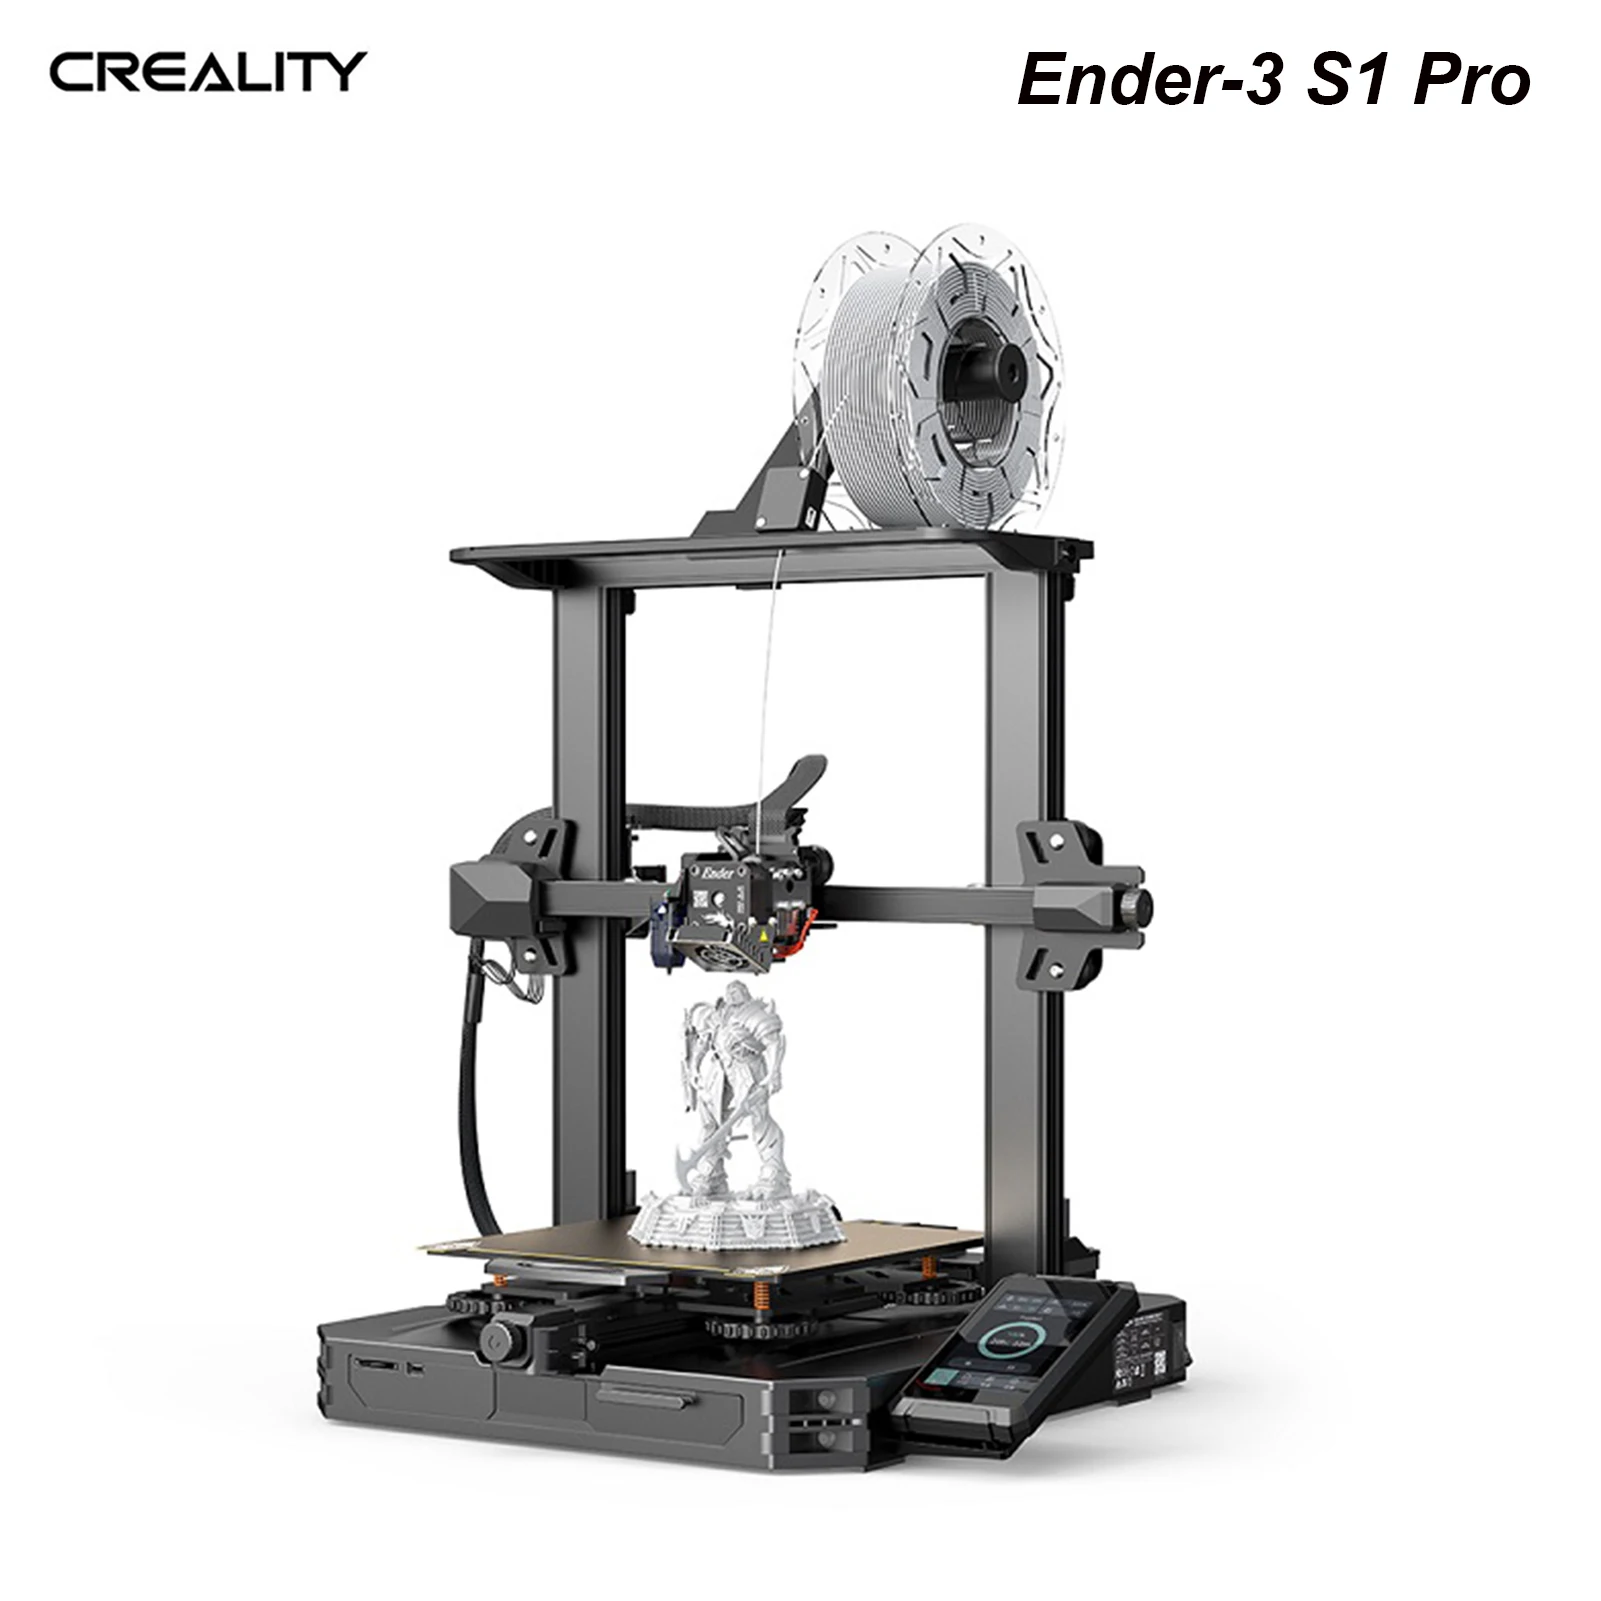 Imprimante 3D Creality Ender-3 V3 SE - La référence pour l